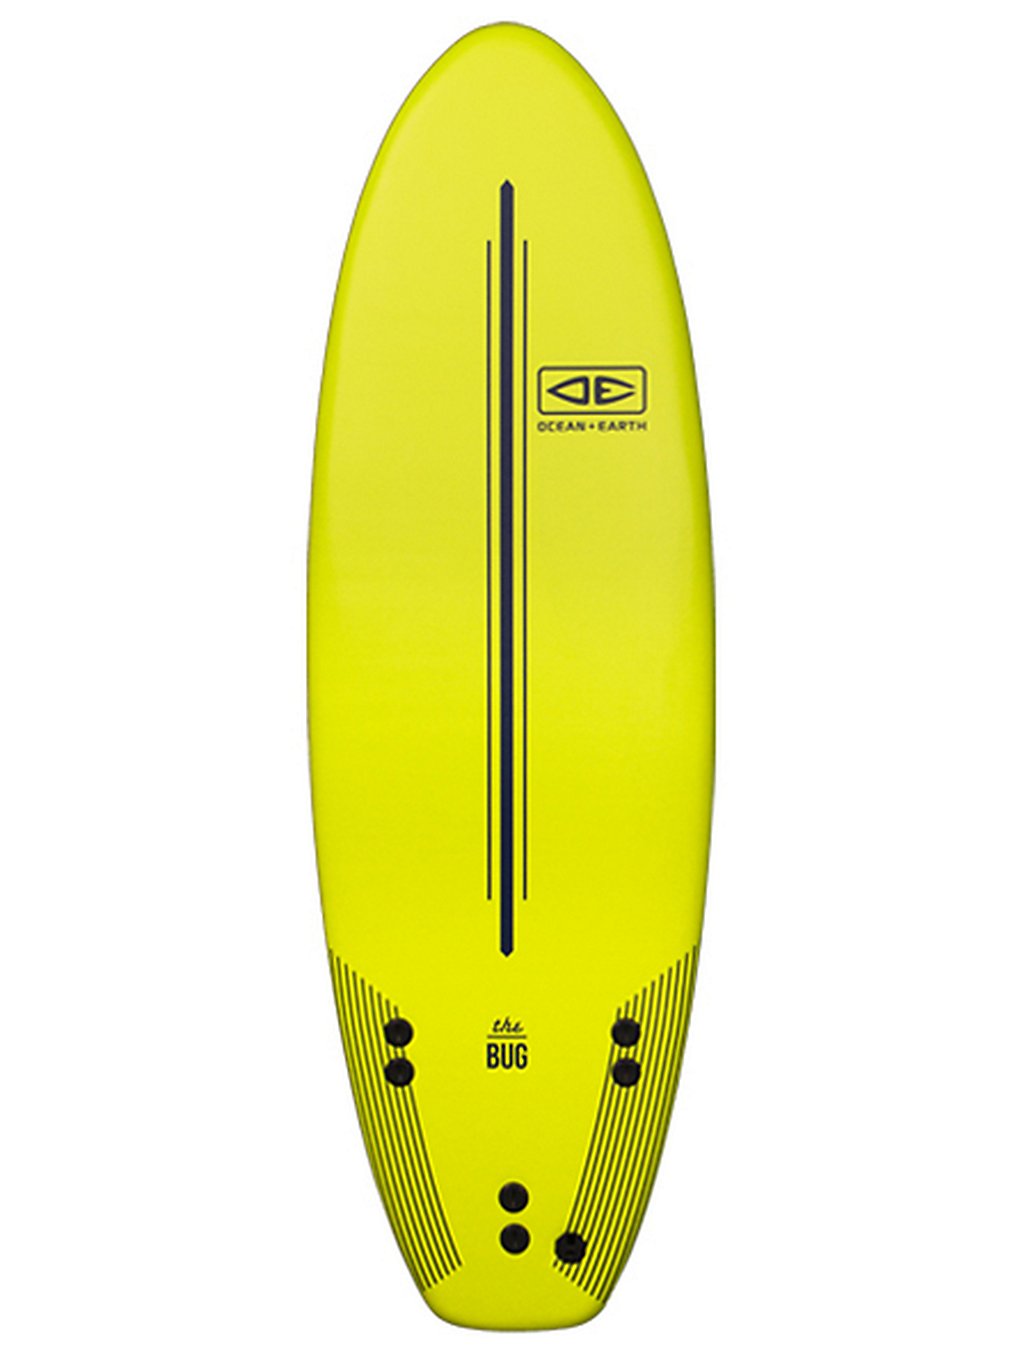 Ocean & Earth The Bug 5'6 Surfboard lime